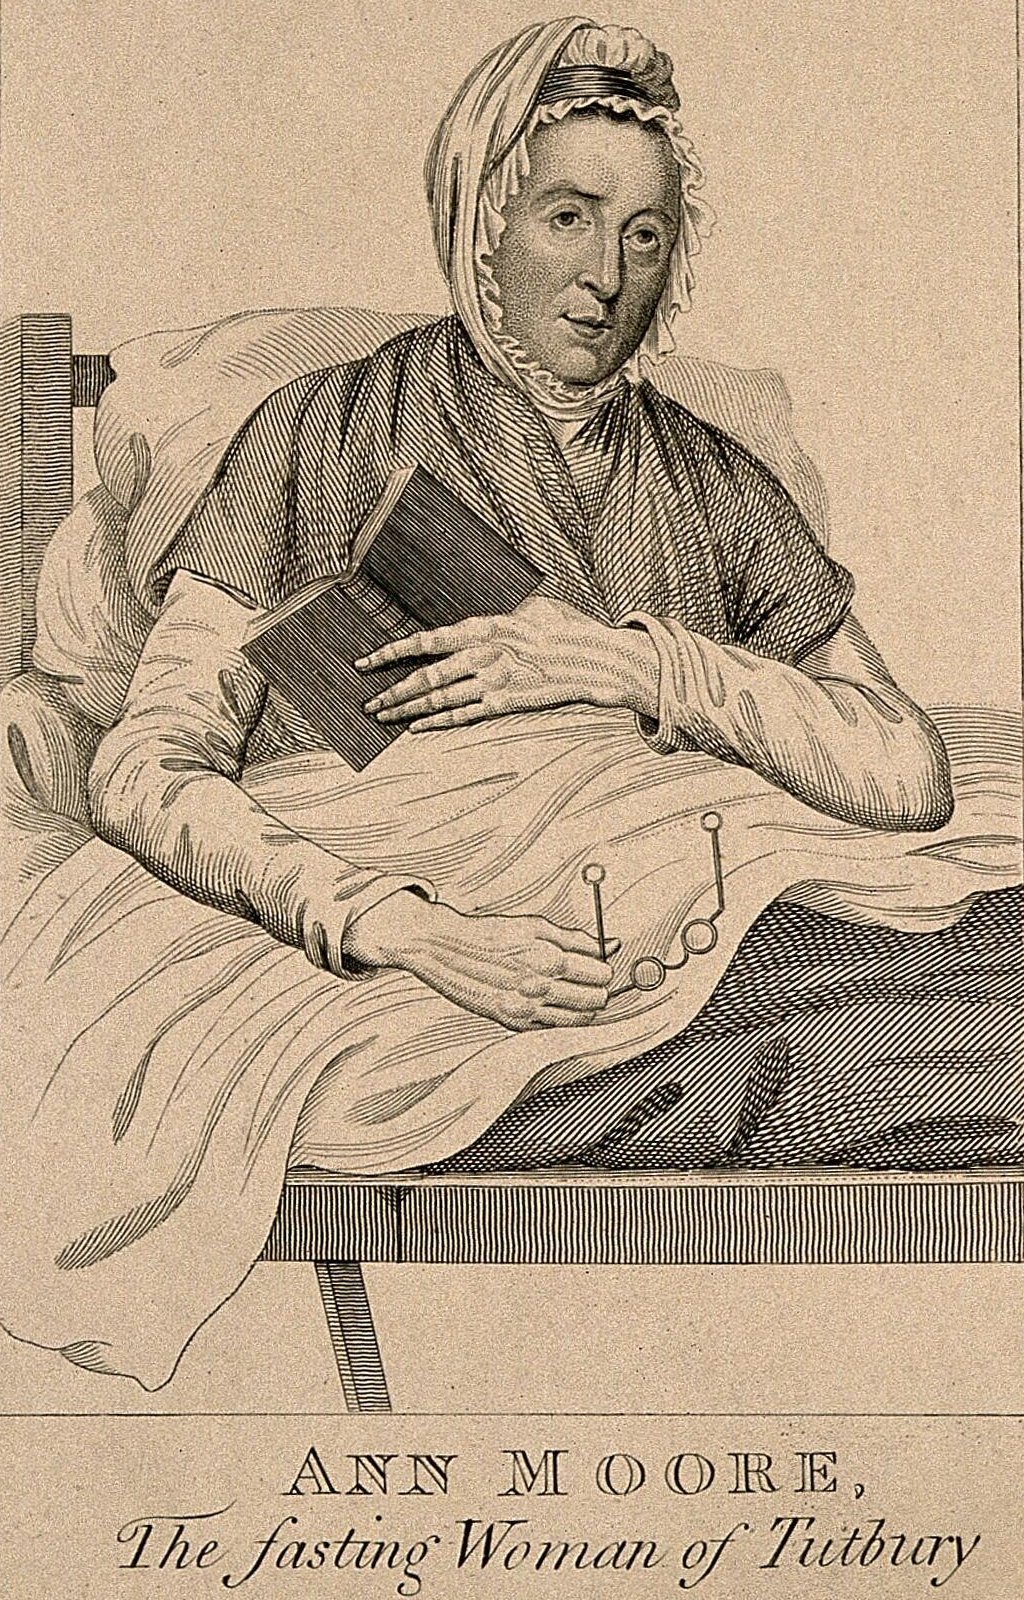 Ann Moore, una mujer que ayuna fraudulentamente, de 58 años. Grabado, 1813.